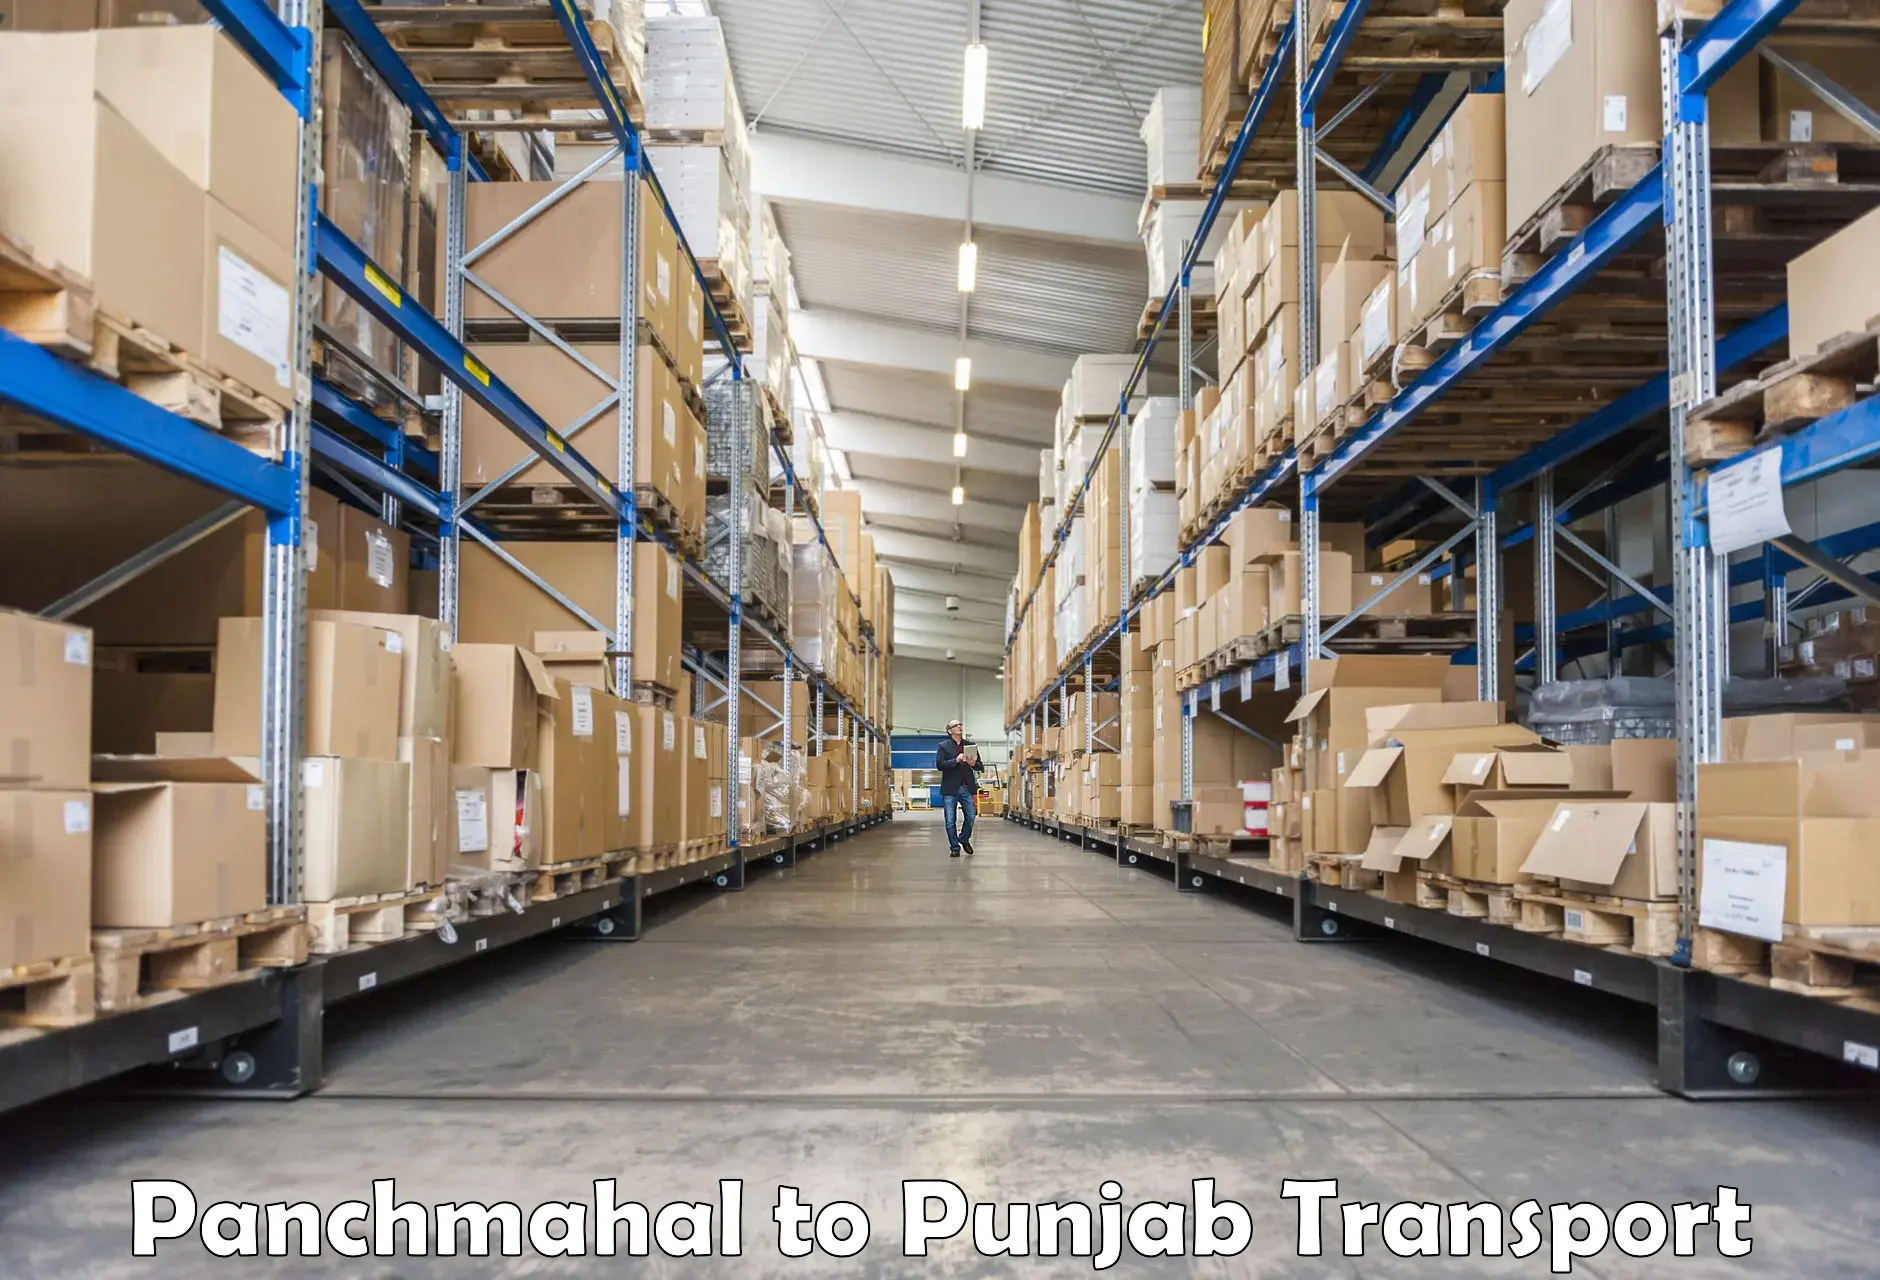 Furniture transport service in Panchmahal to Punjab